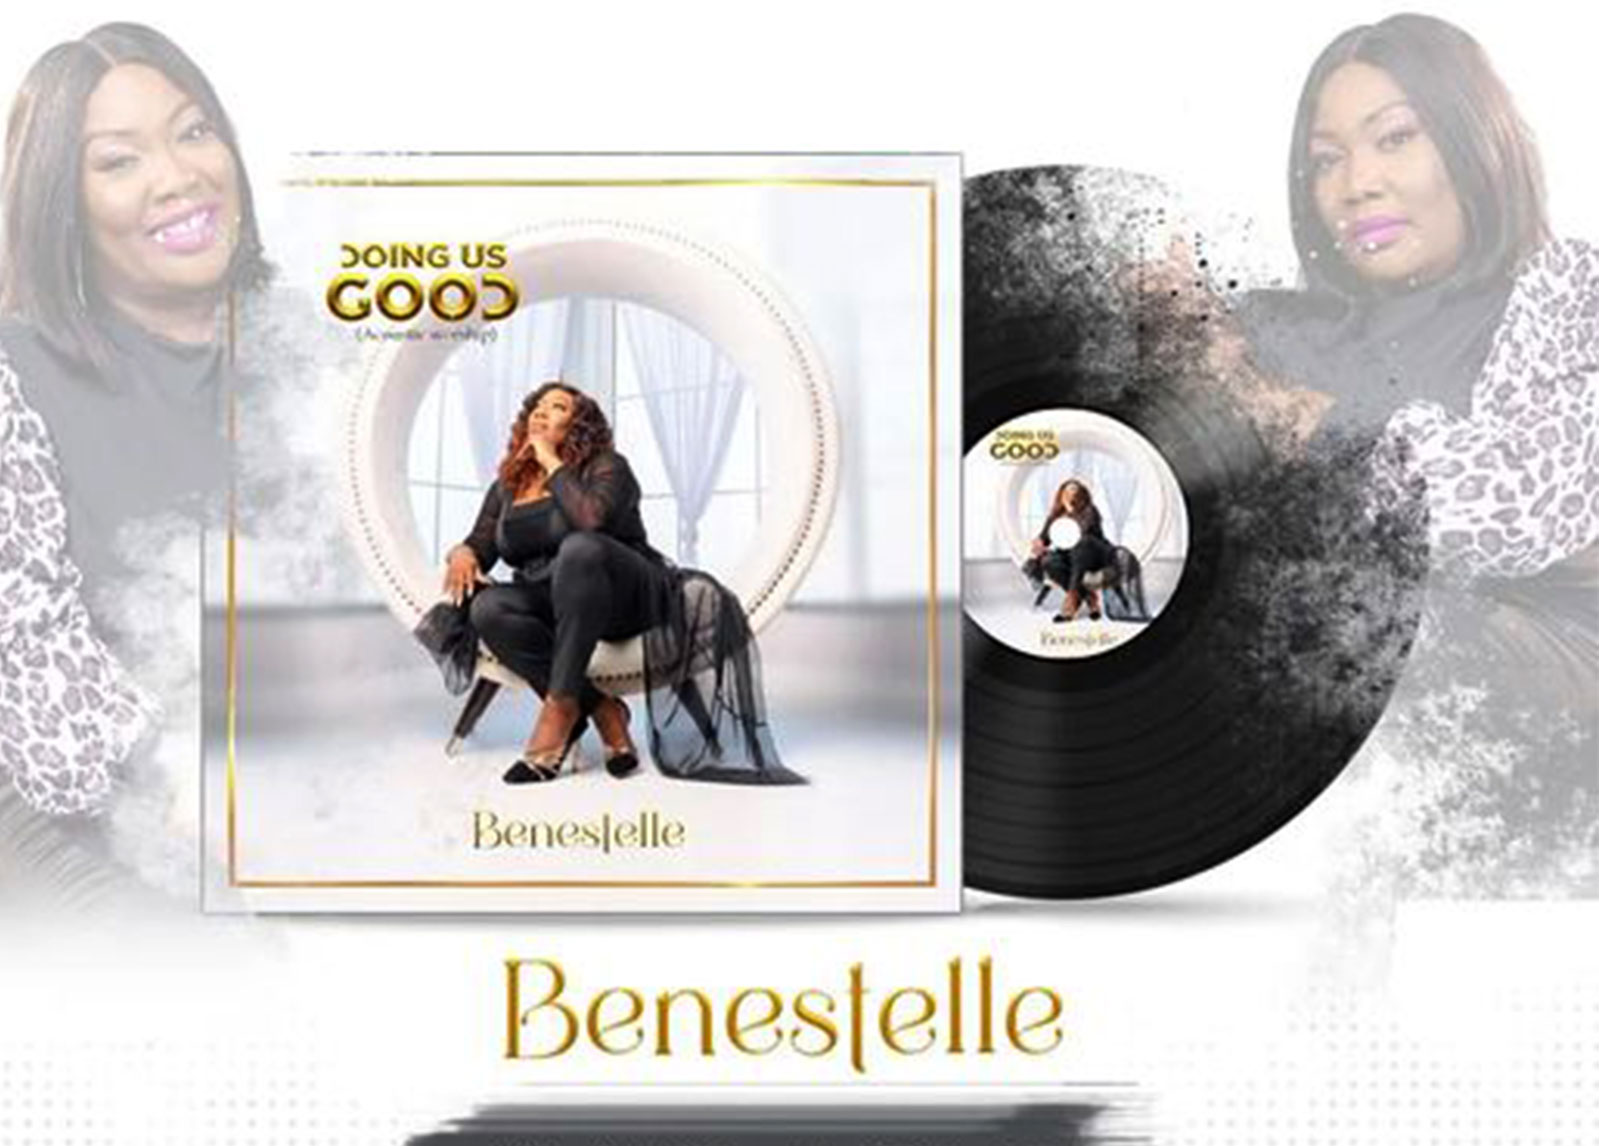 Canadian Gospel Recording Artiste, Benestelle Releases ‘Doing Us Good’